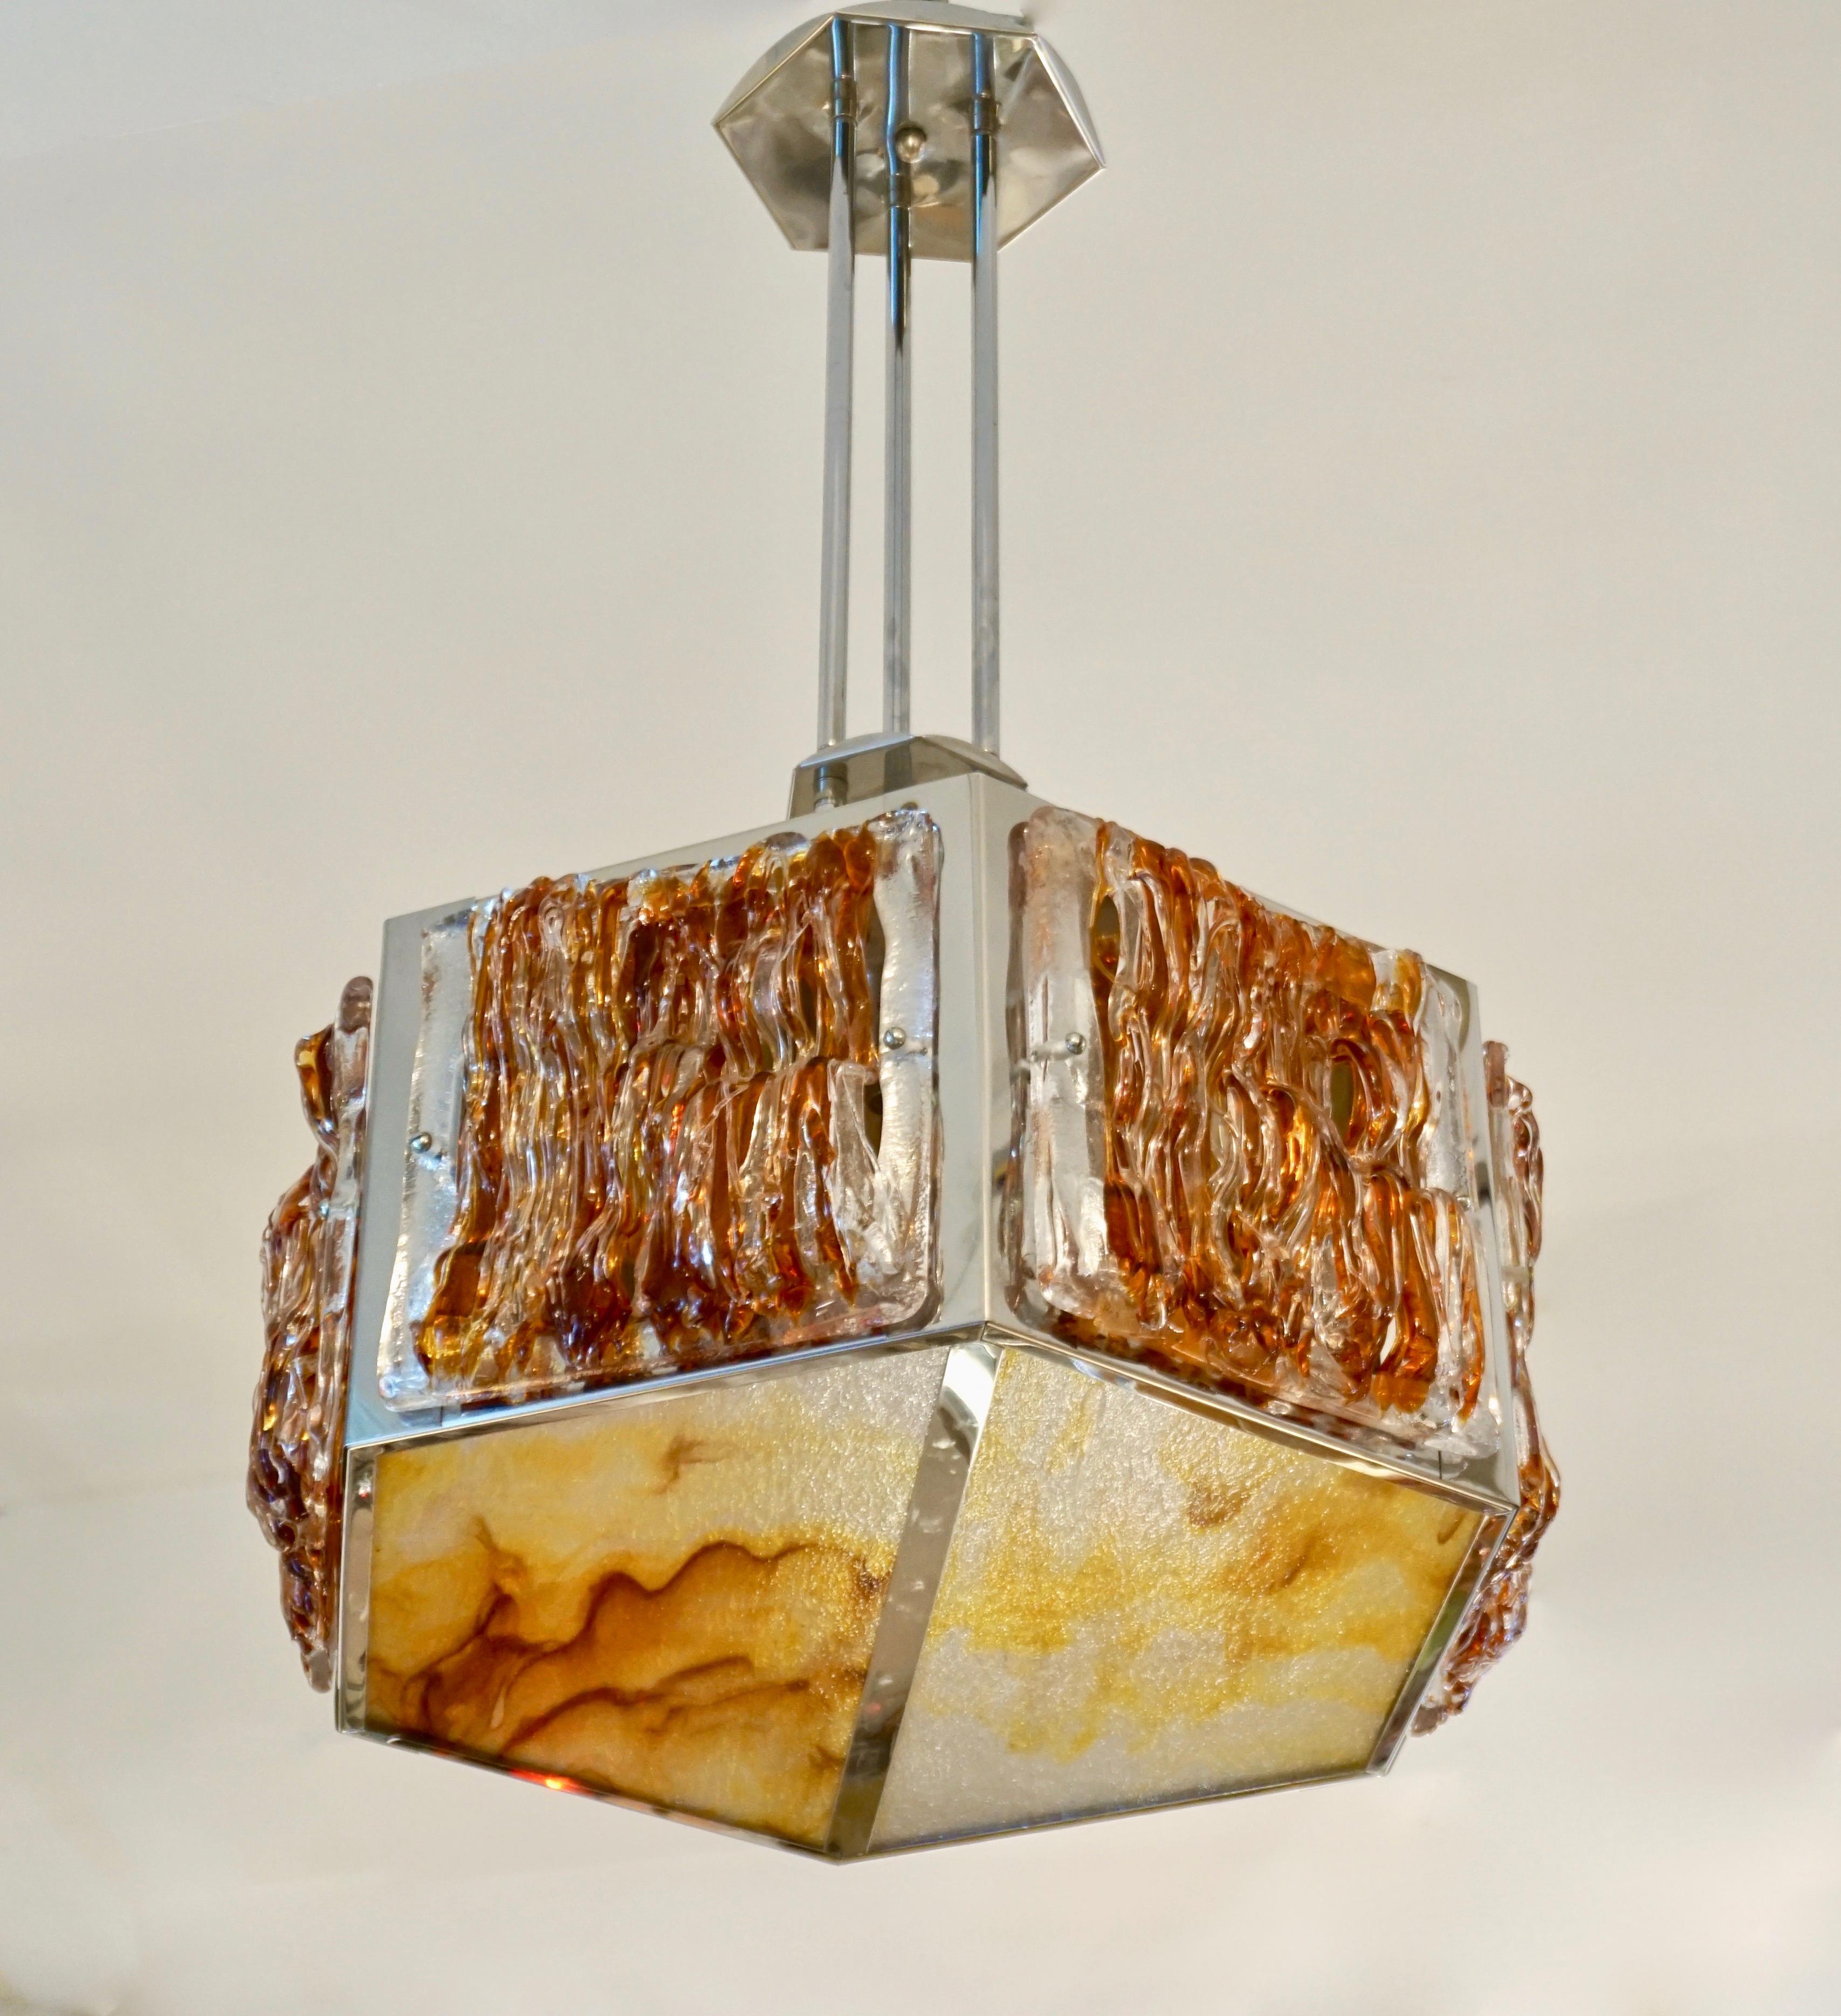 Un rare lustre italien Design-Light du milieu du siècle par Murano, la structure en nickel a une forme géométrique hexagonale, répétée dans les auvents, avec 6 panneaux latéraux organiques aériens en verre de Murano cristallin et orange travaillé en